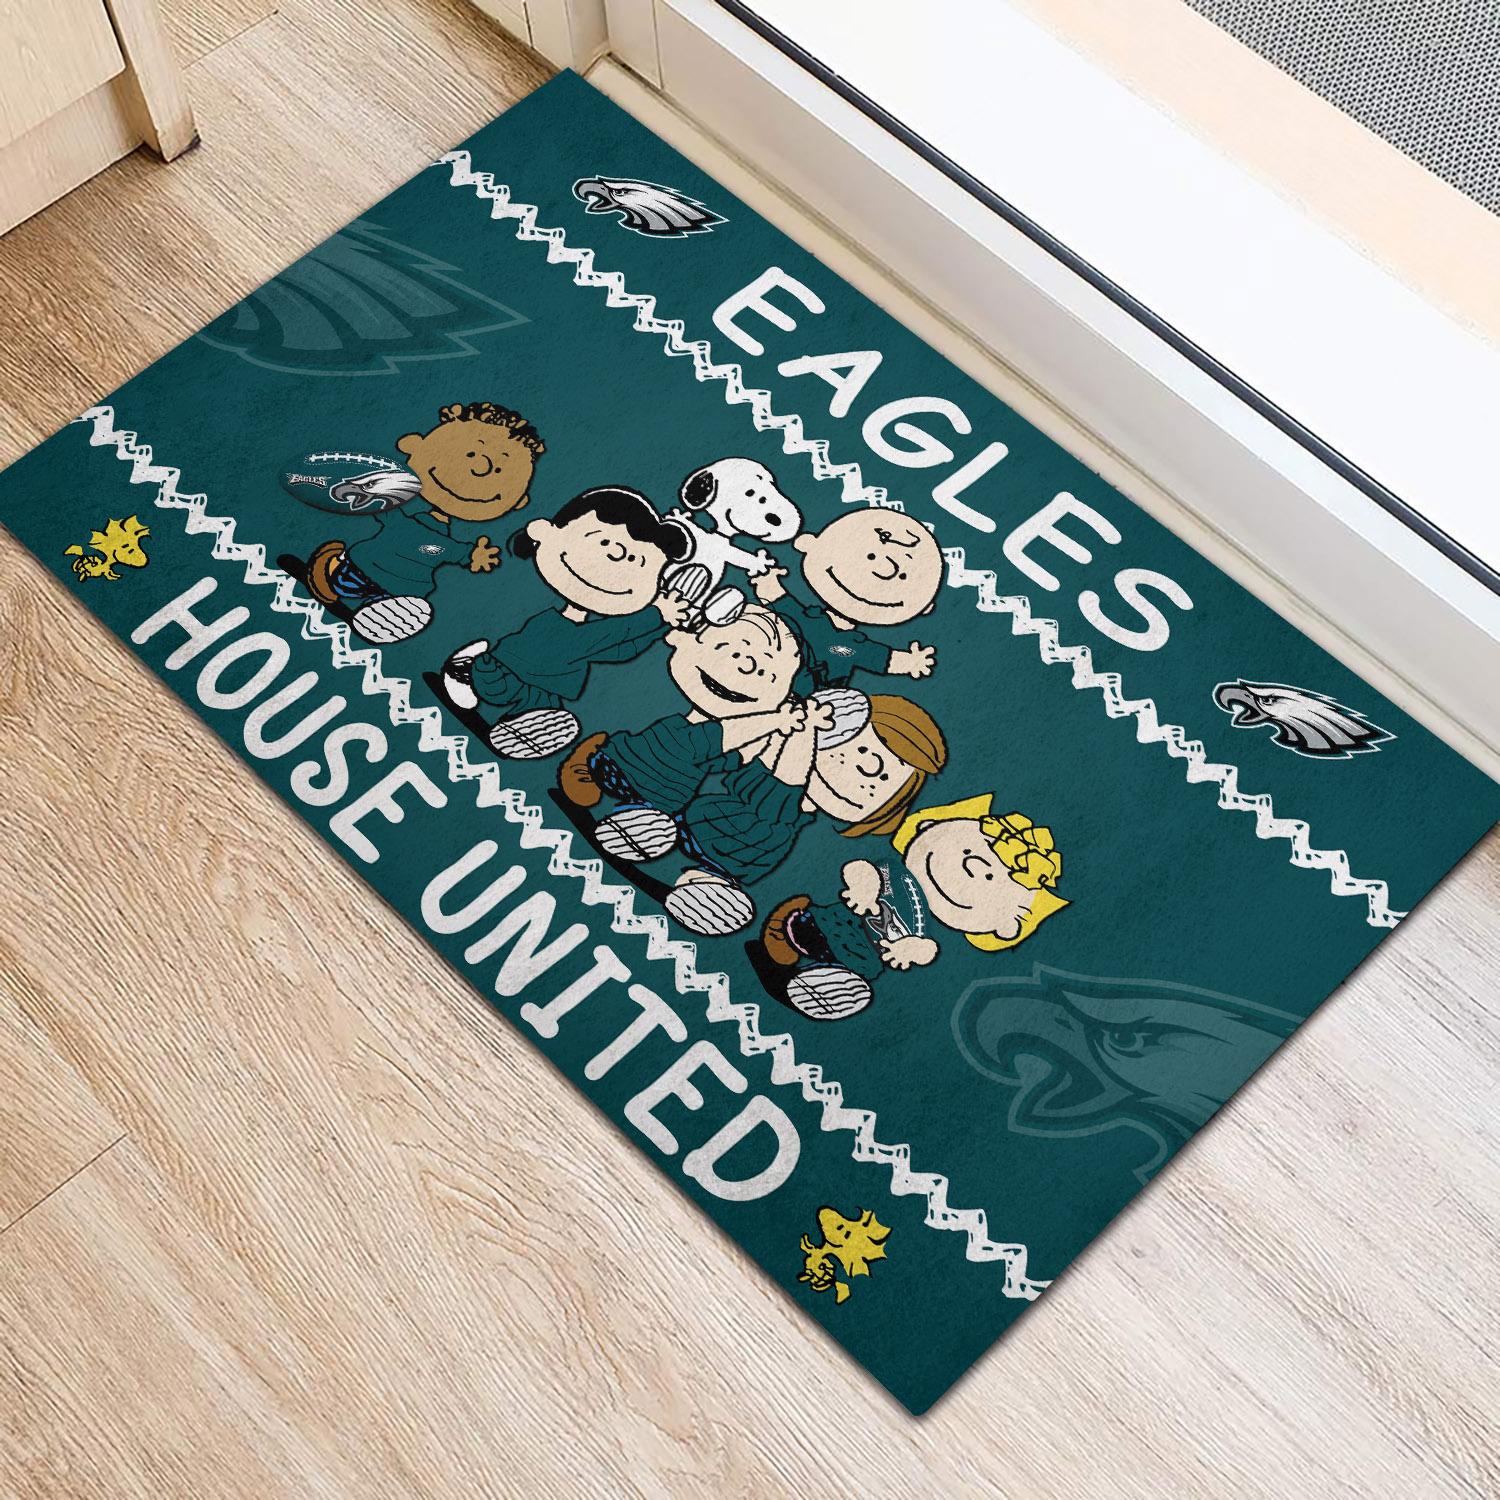 Philadelphia Eagles Peanuts House United Doormat